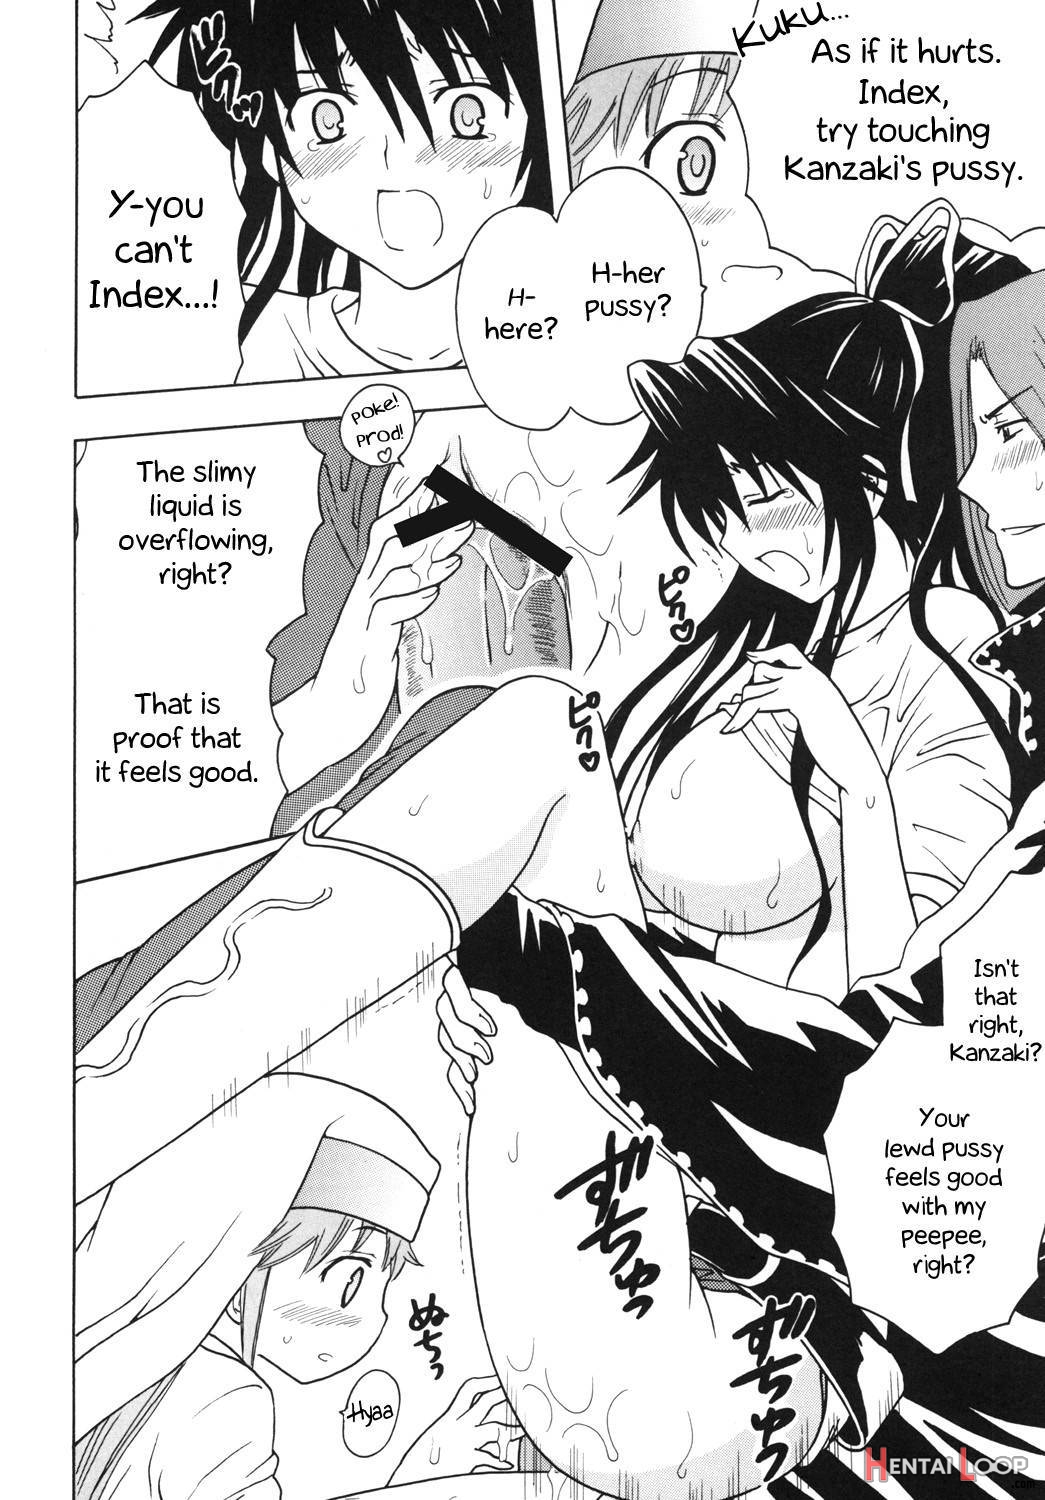 Toaru Otaku no Index #1 page 27